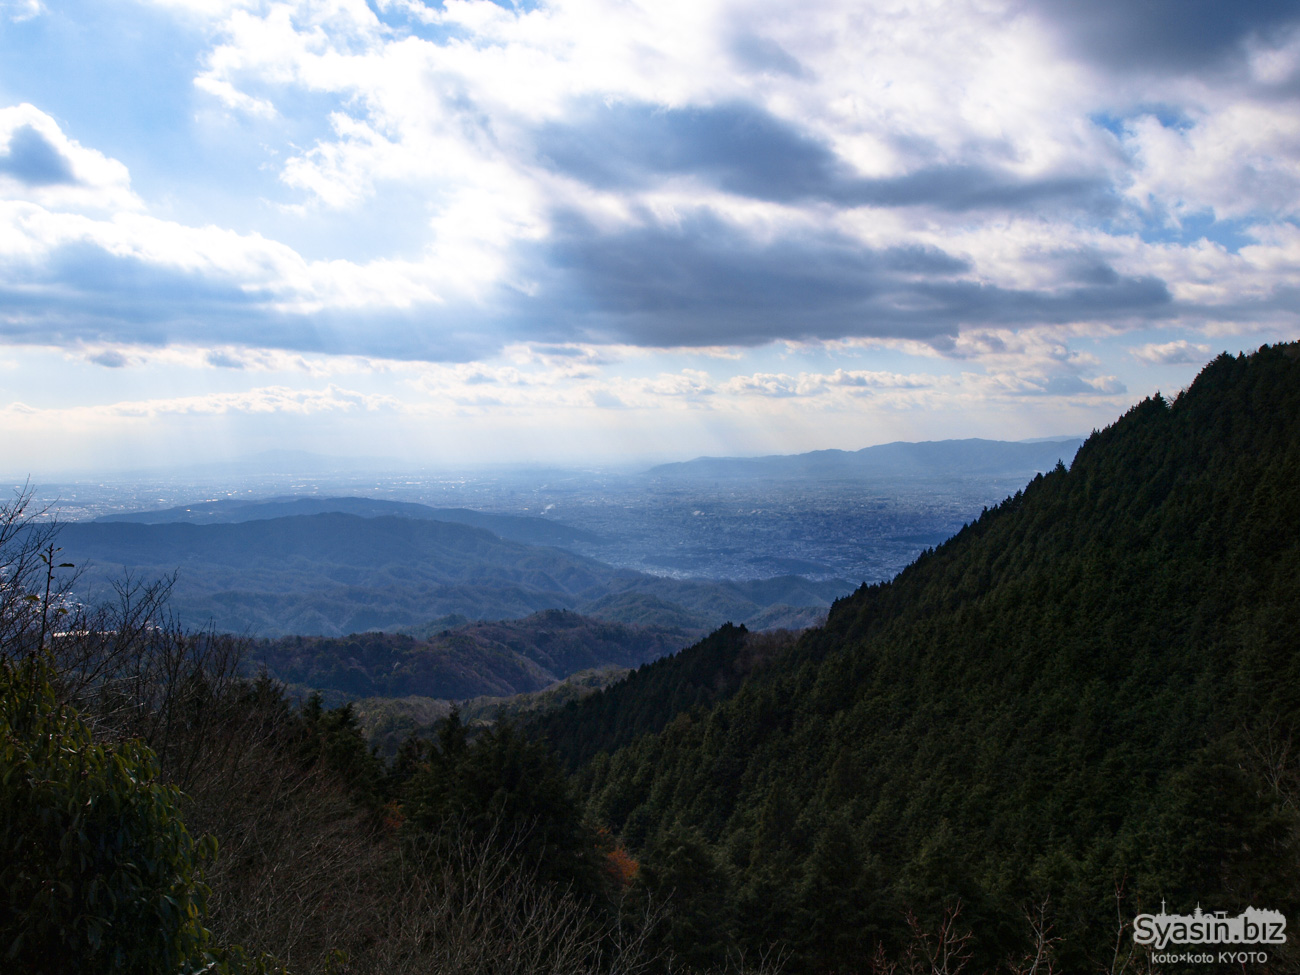 比叡山 登山 – 坂本から延暦寺、雲母坂へ下山ルート